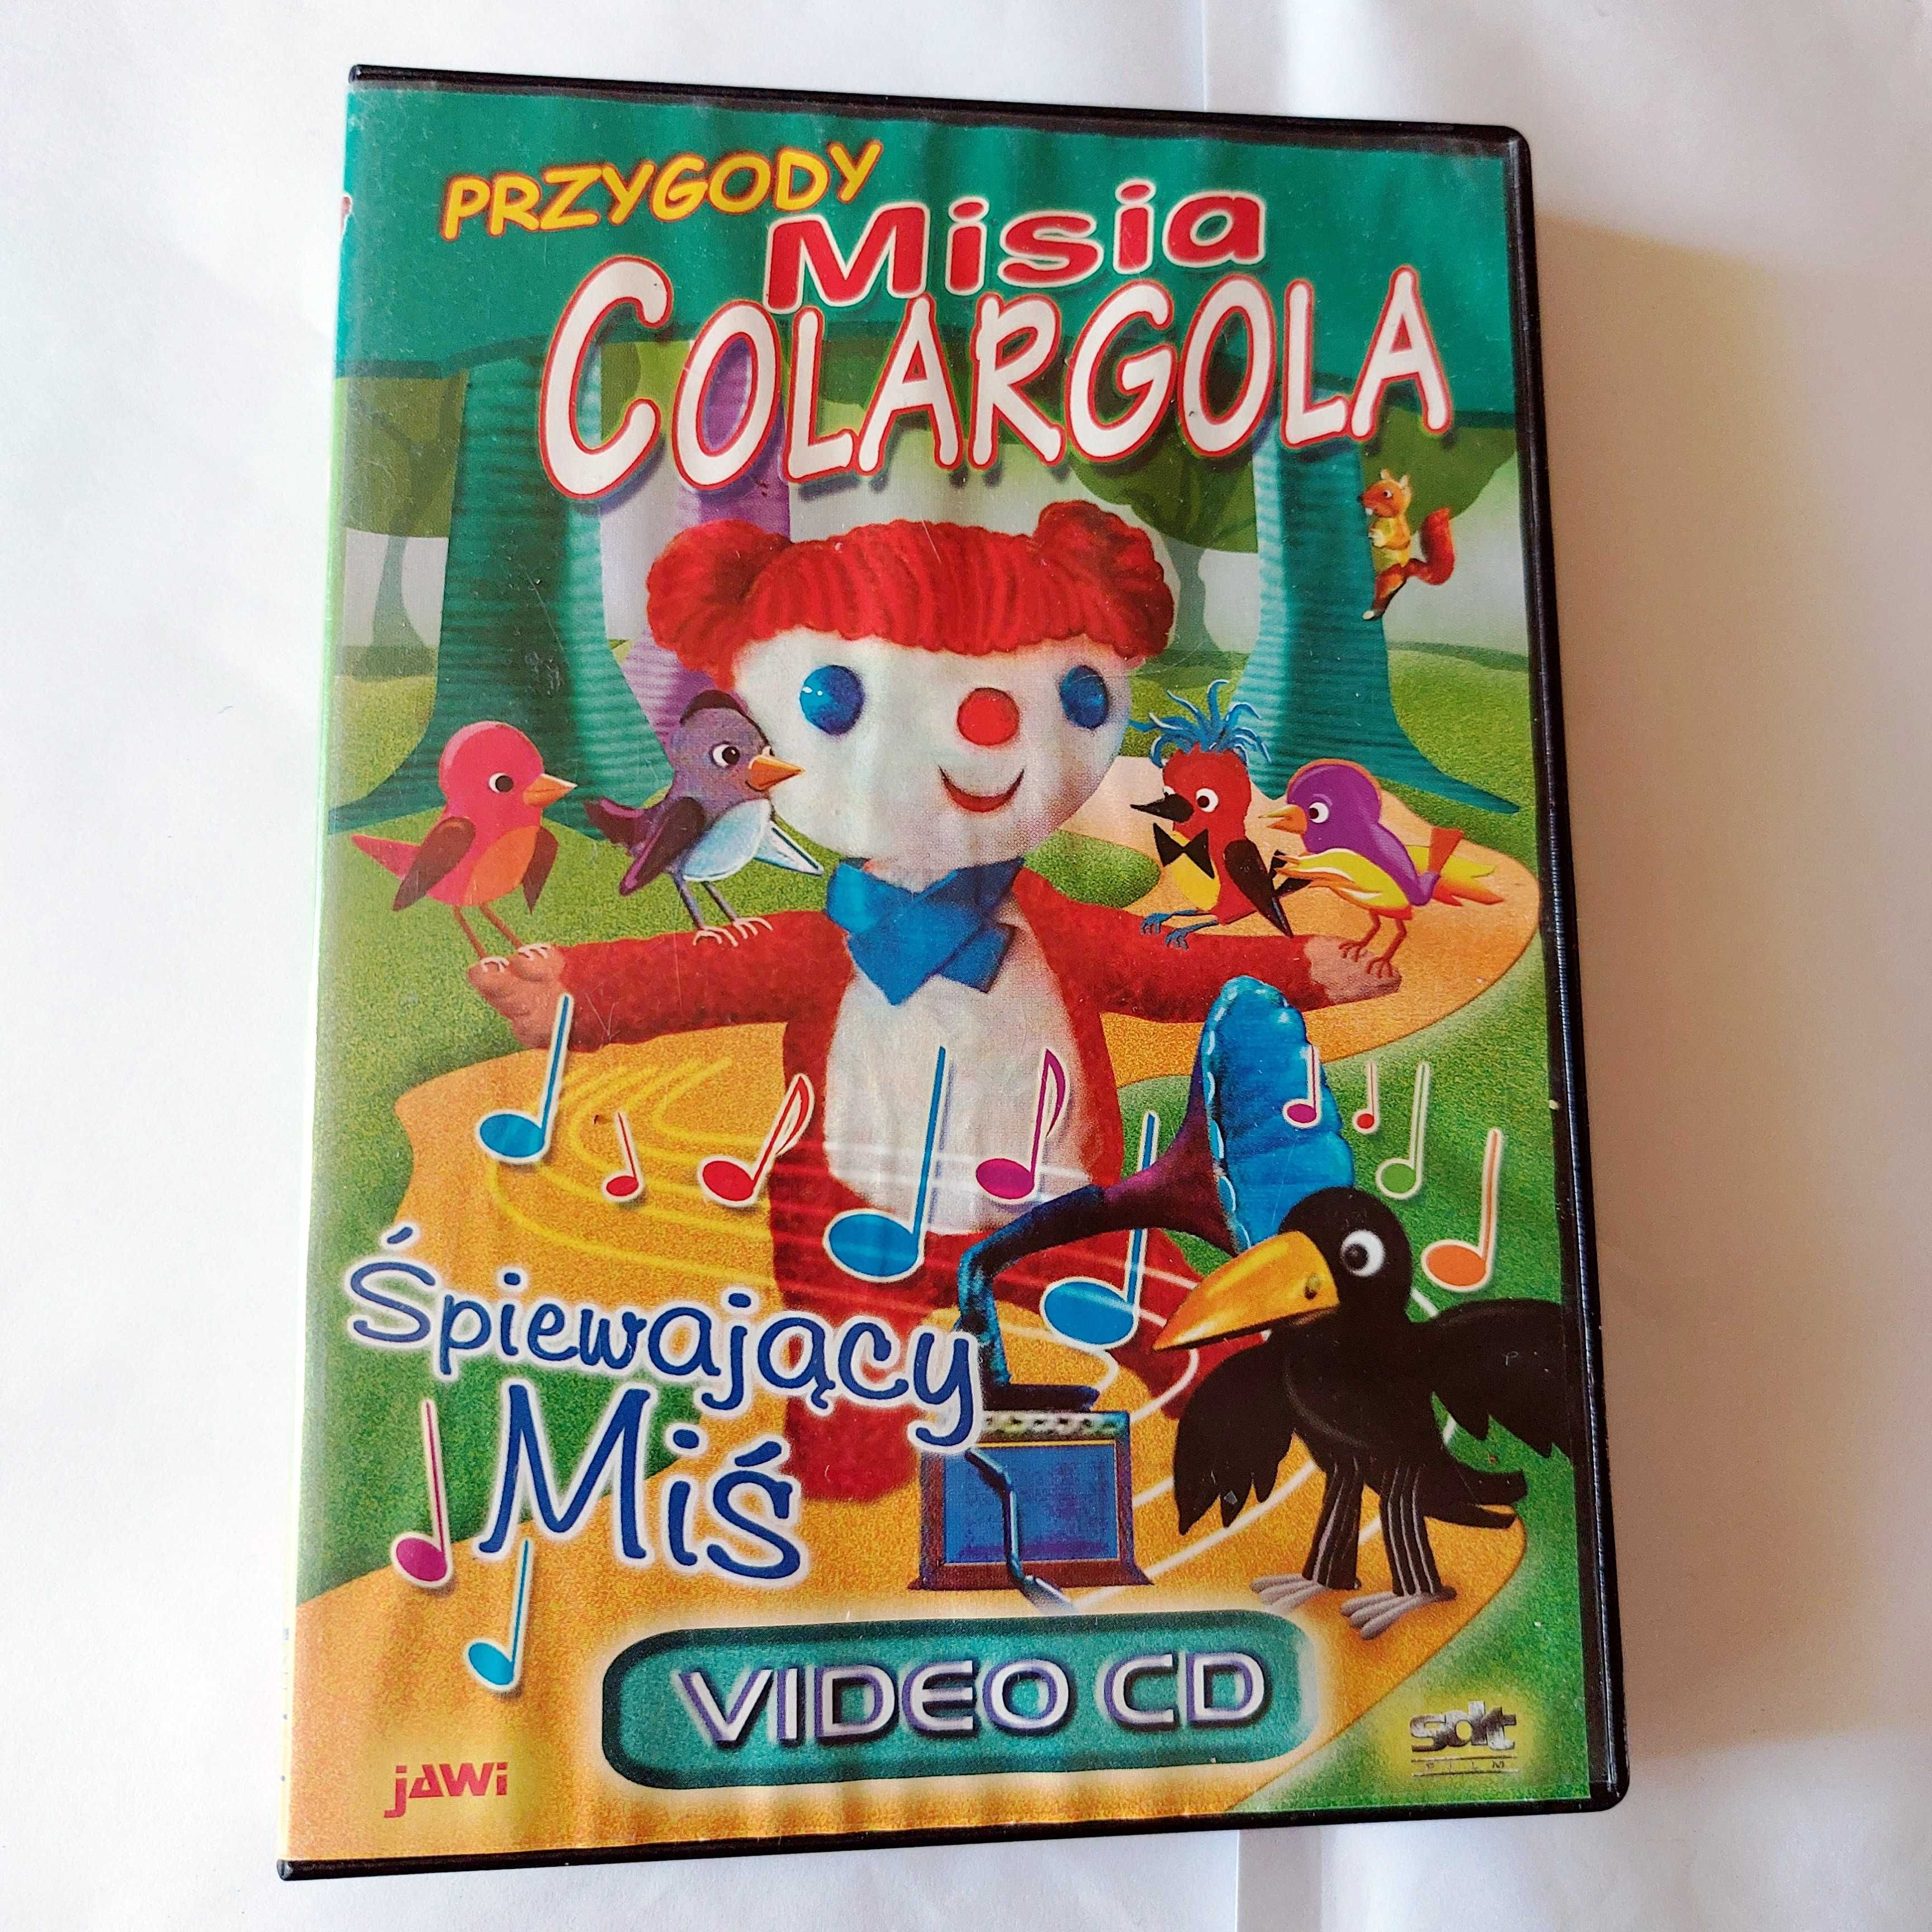 PRZYGODY MISIA COLARGOLA: śpiewający miś | film animowany na DVD/VCD